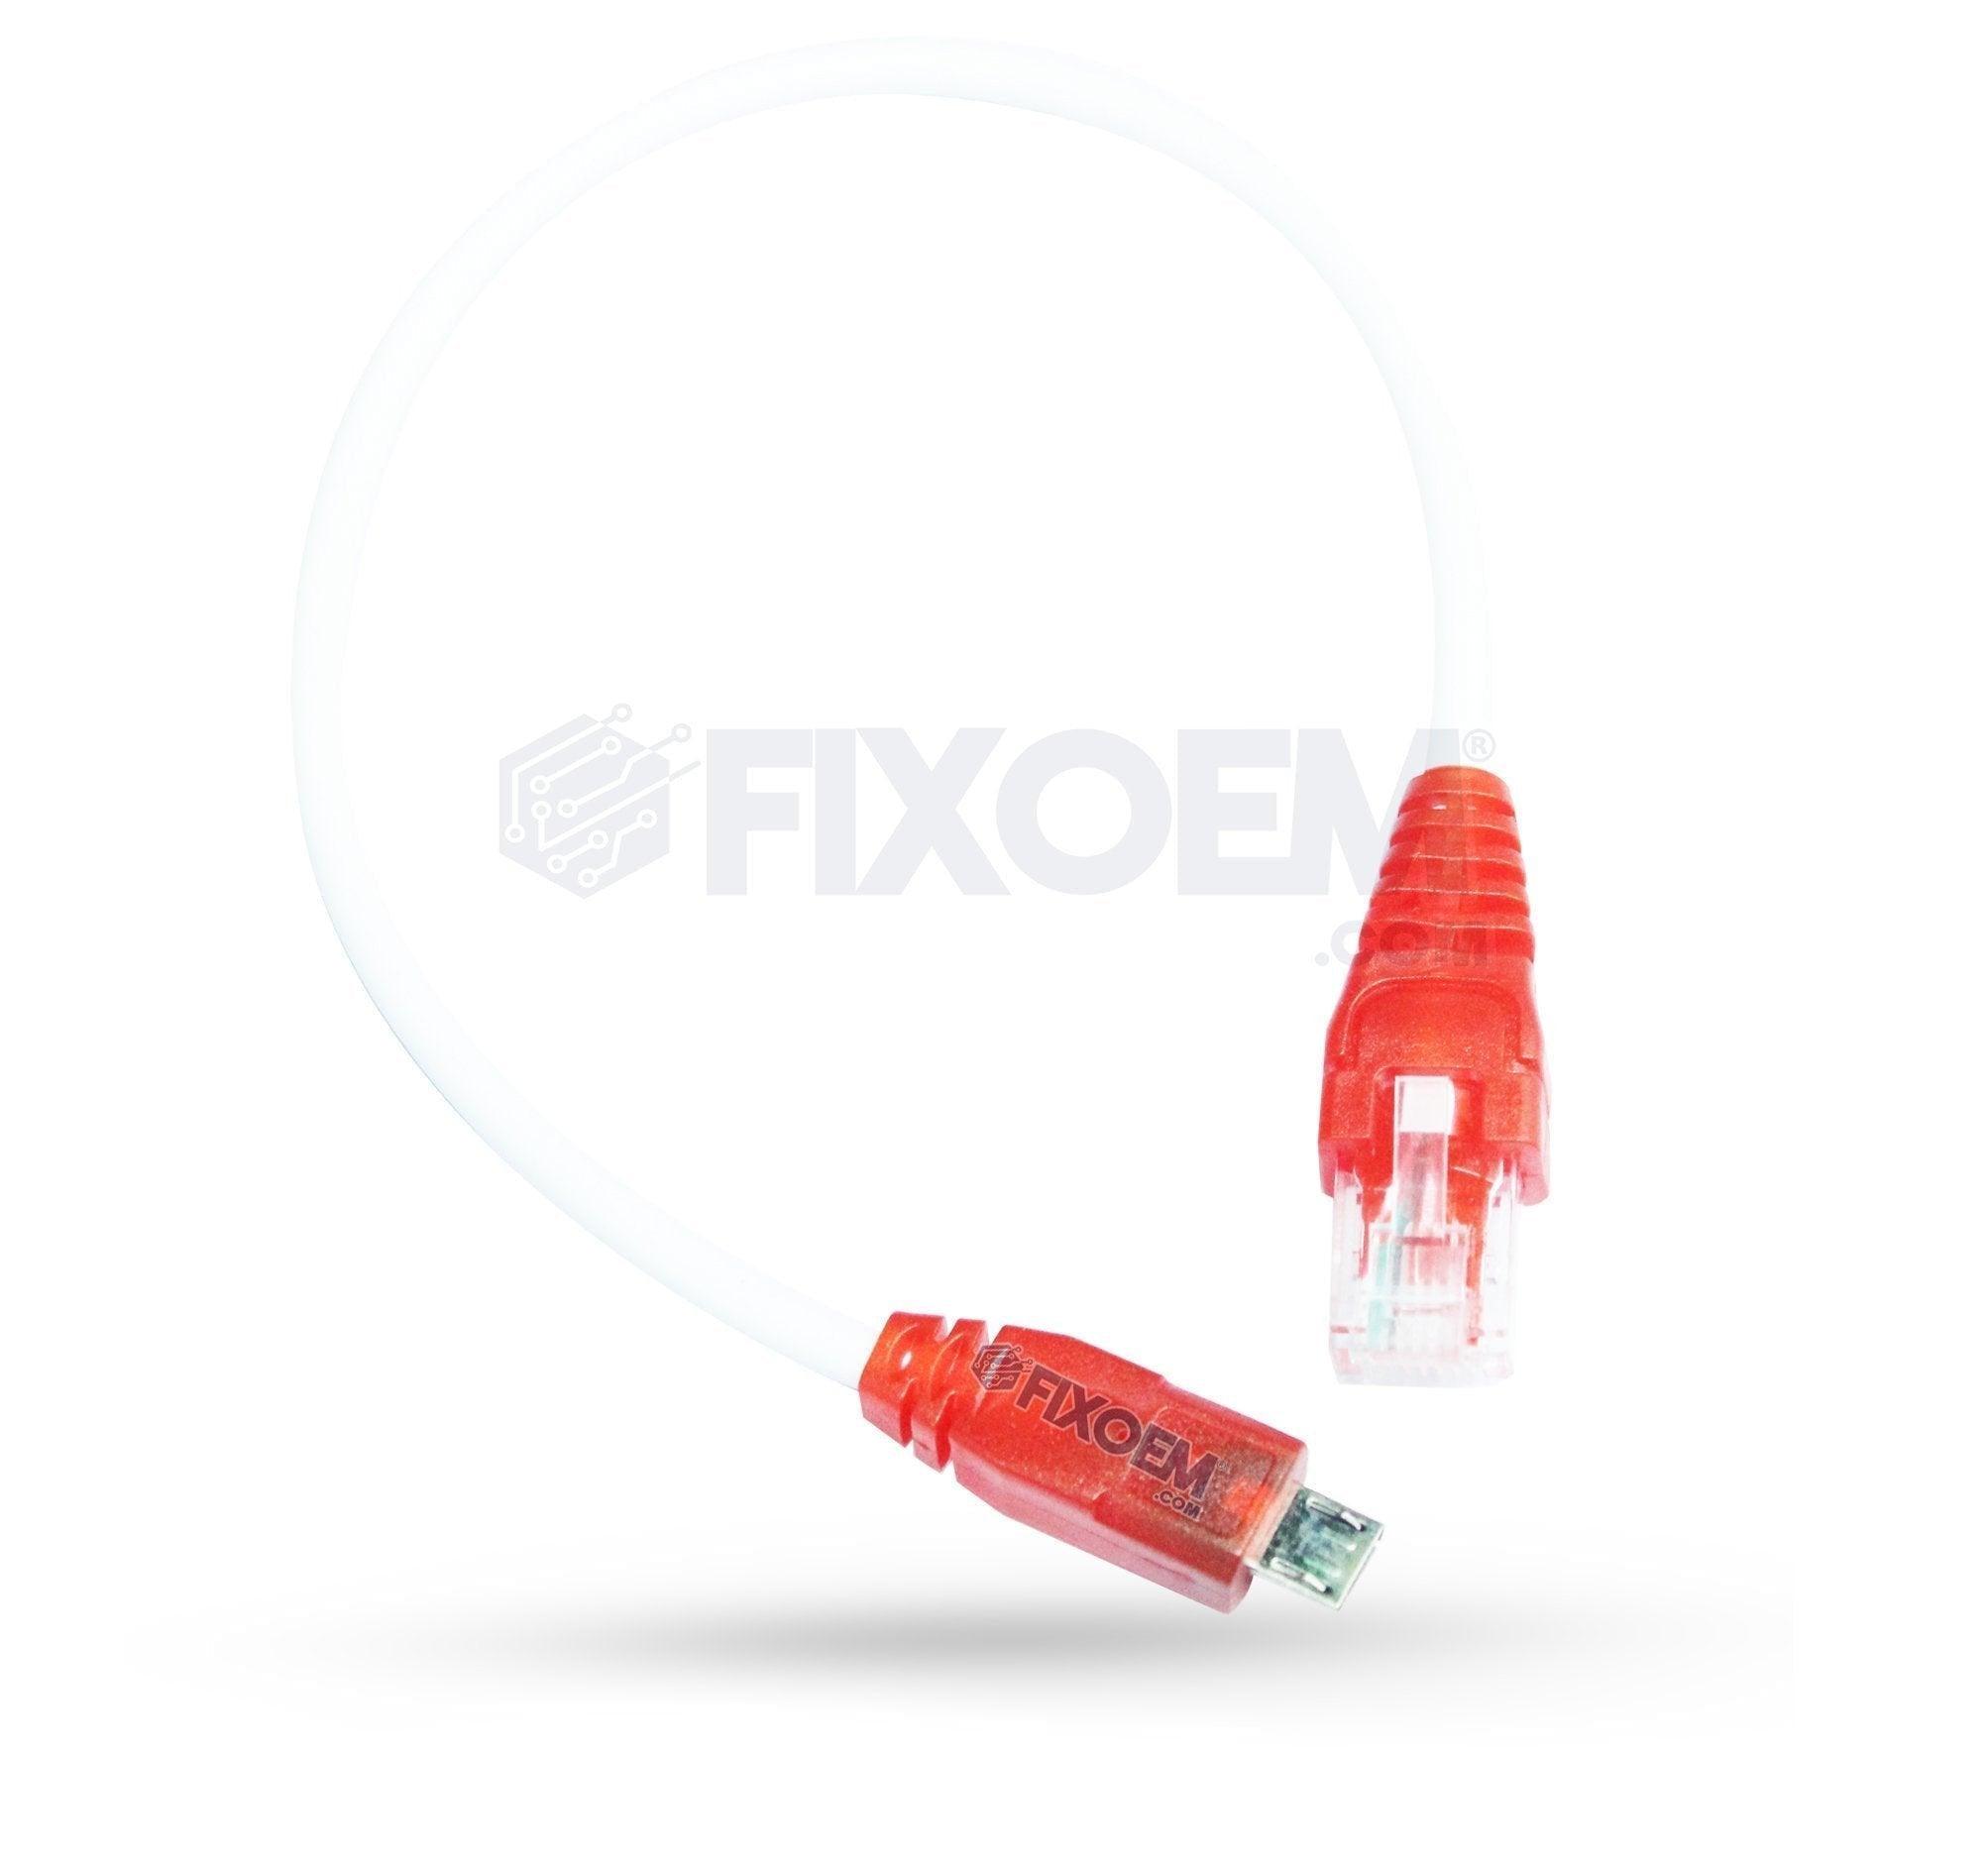 Cable Repuesto para Cajas liberación NCK / Z3X |+2,000 reseñas 4.8/5 ⭐